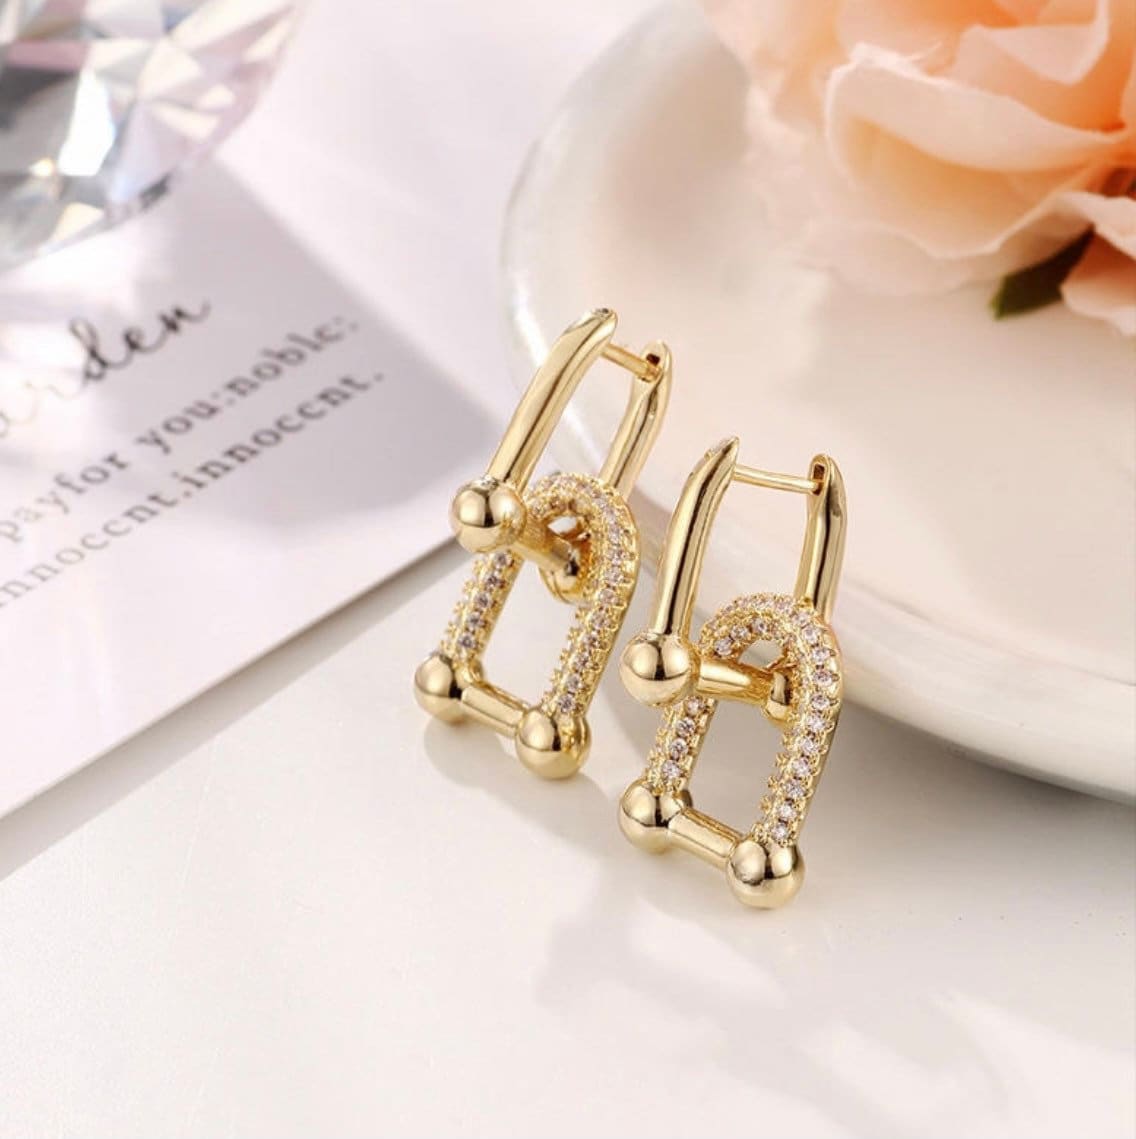 Elegant Gold Hoop Earrings,U Shape Earrings,CZ Gold Hoops,Huggie Earrings,Dainty Hoop Earrings,Tiny Hoop Earrings,Charm Hoops,Gift For Her